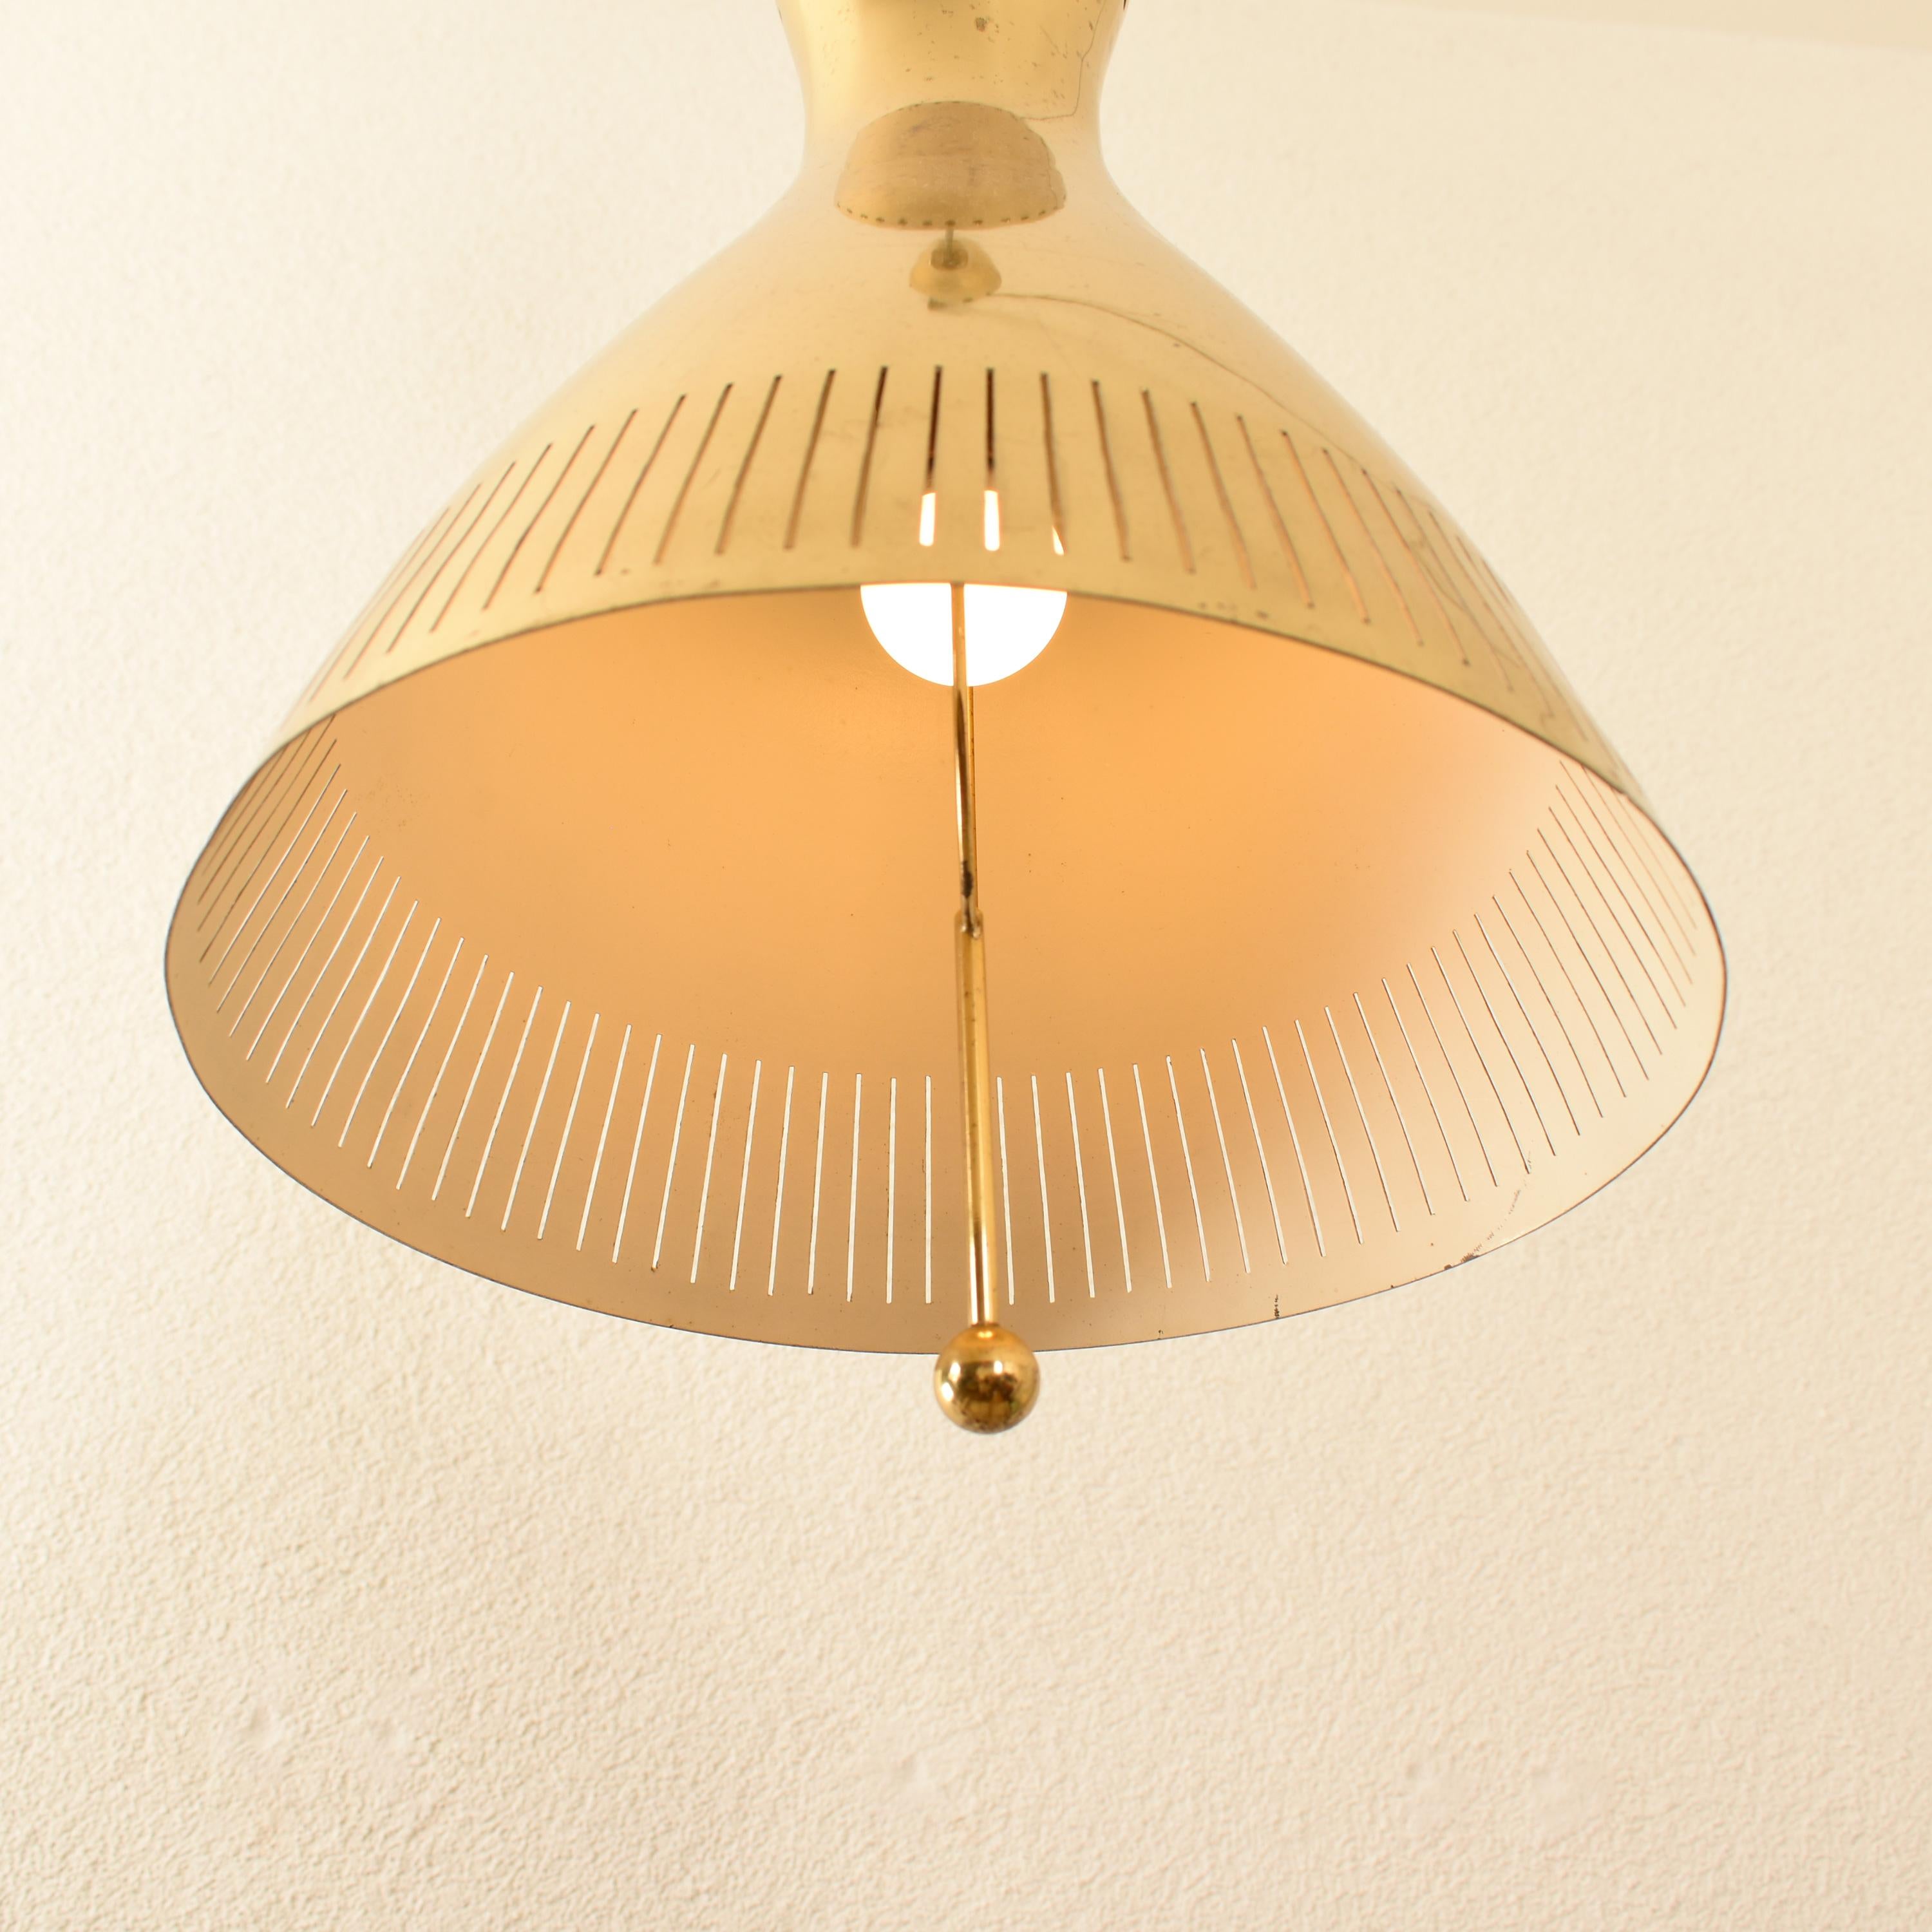 Mid-Century Modern Brass Pendant Lamp by Vereinigte Werkstätten 1960s Germany For Sale 9